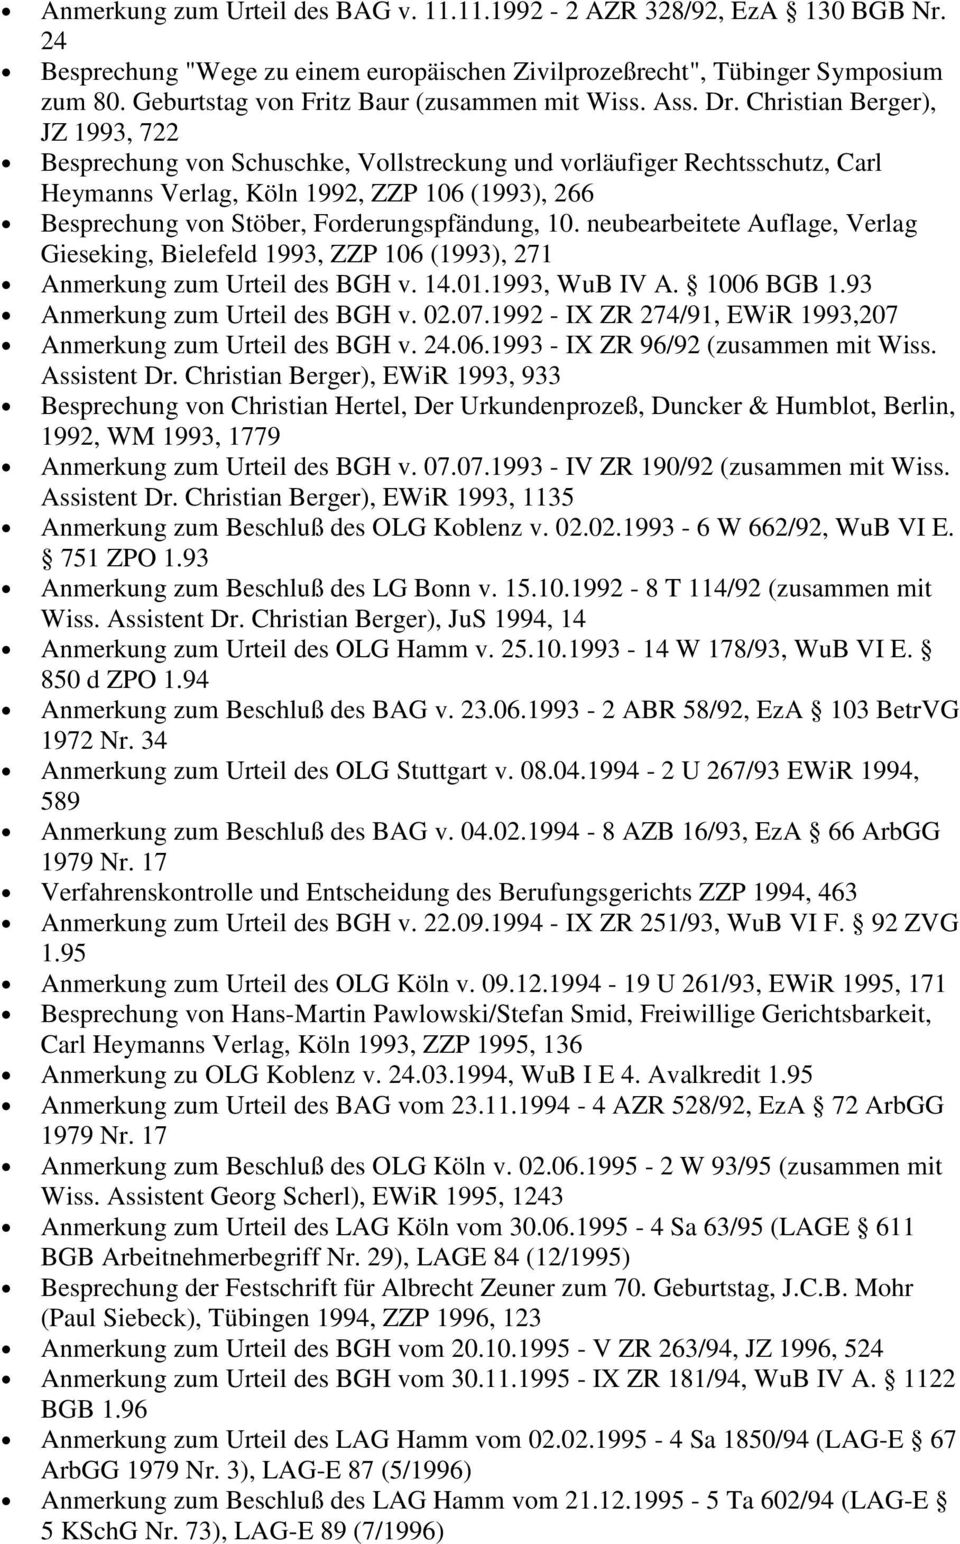 Christian Berger), JZ 1993, 722 Besprechung von Schuschke, Vollstreckung und vorläufiger Rechtsschutz, Carl Heymanns Verlag, Köln 1992, ZZP 106 (1993), 266 Besprechung von Stöber, Forderungspfändung,